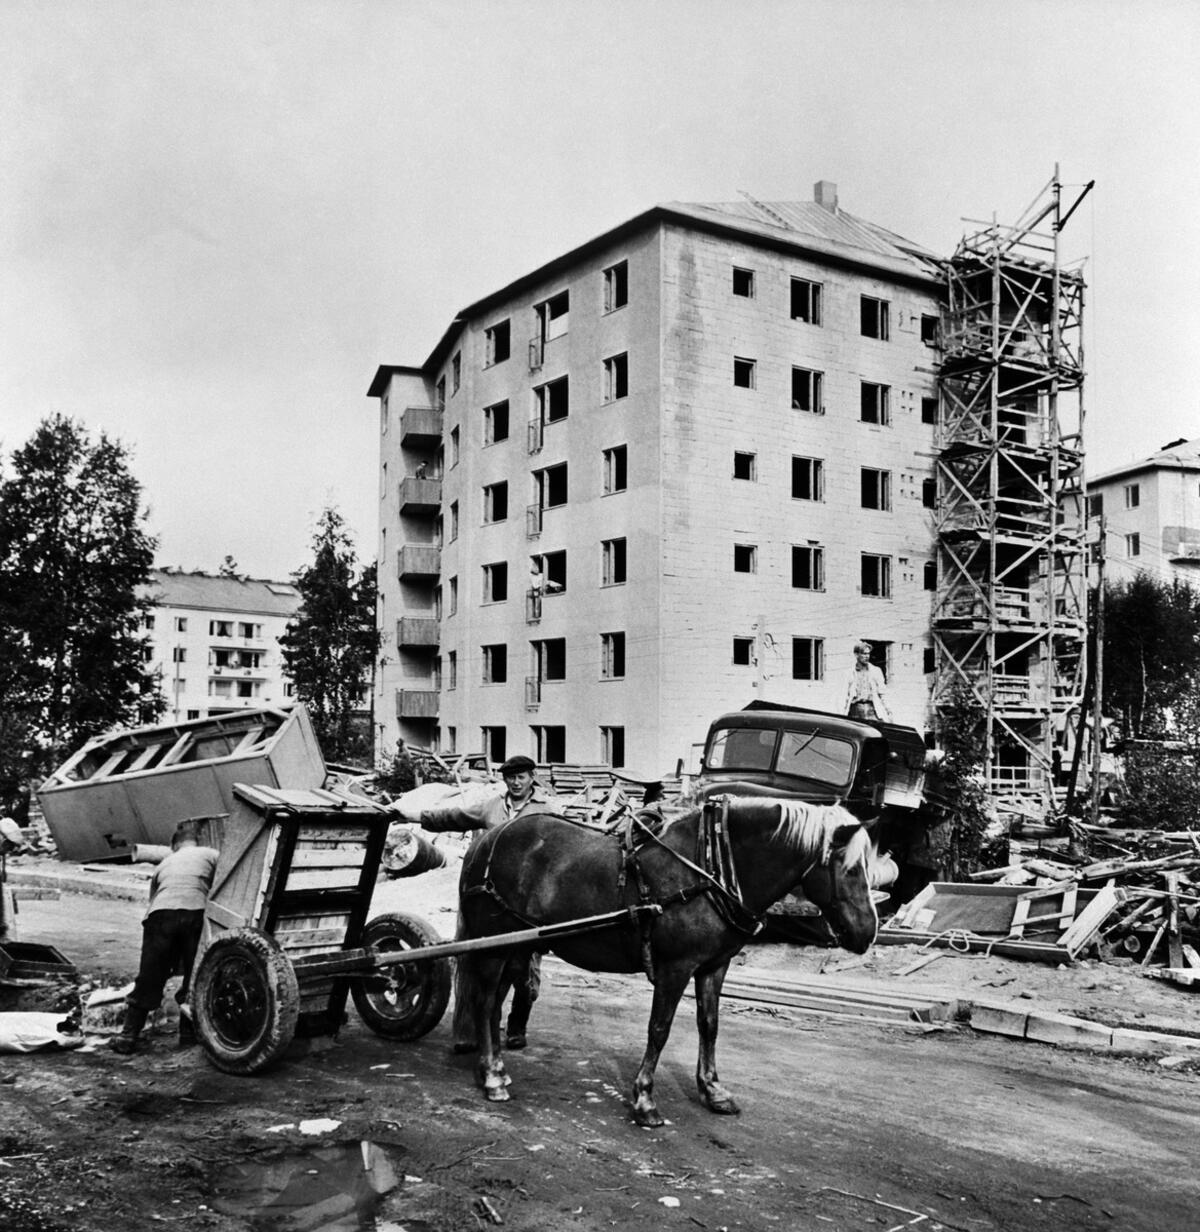 Byggarbetsplats för ett bostadshus på adressen Pietari Hannikainens väg 8 – Skådespelarvägen 4 i Norra Haga.  Foto: Helsingfors stadsmuseum / Eino Heinonen